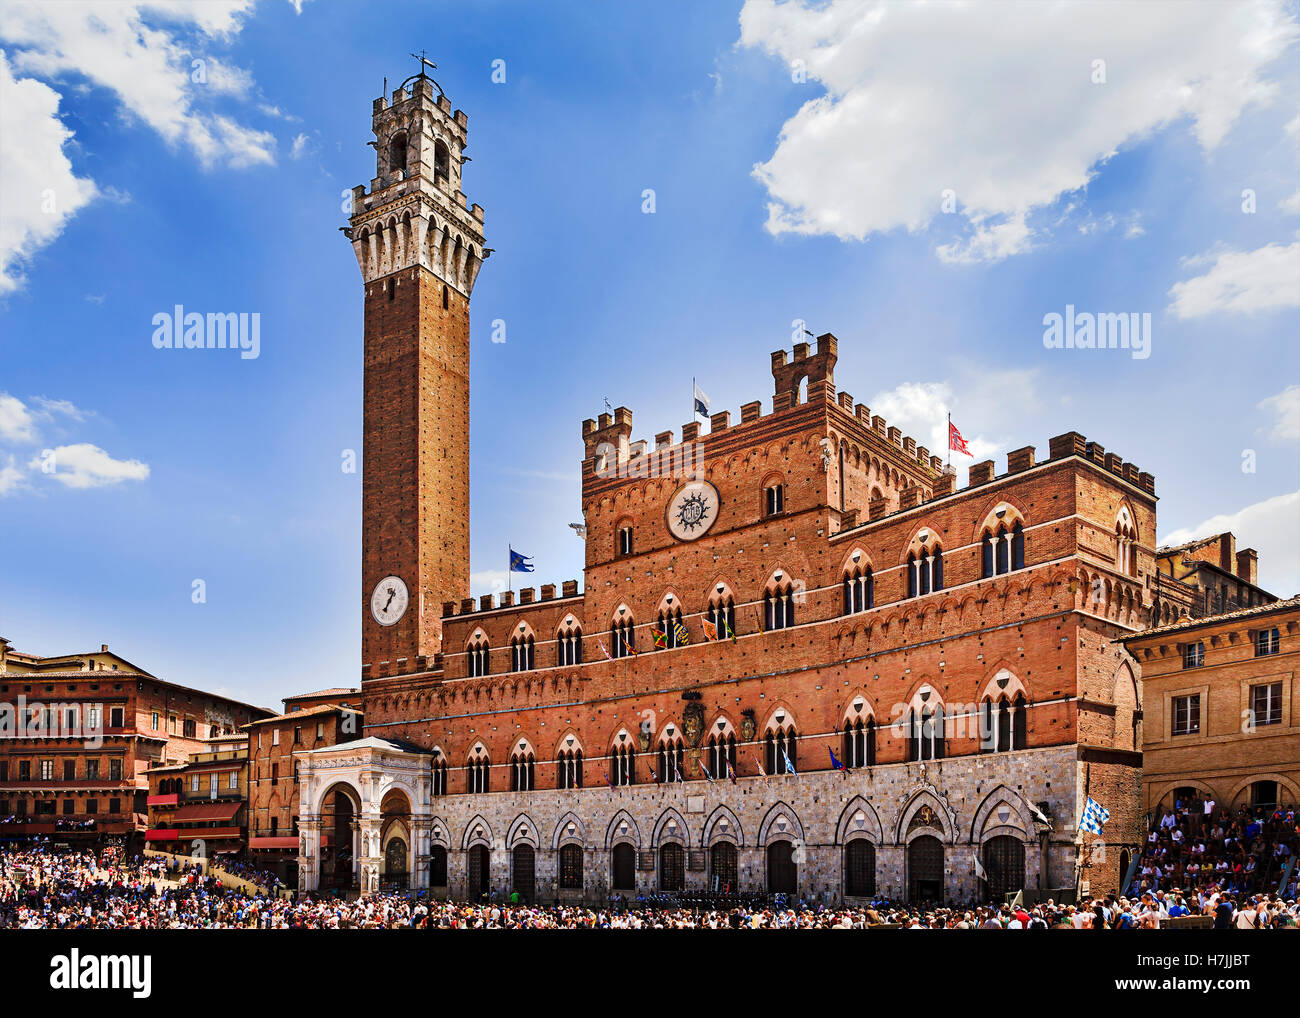 La place centrale de la ville de Sienne en Italie pendant la journée, en face de mairie façade et tall bell tower. Banque D'Images